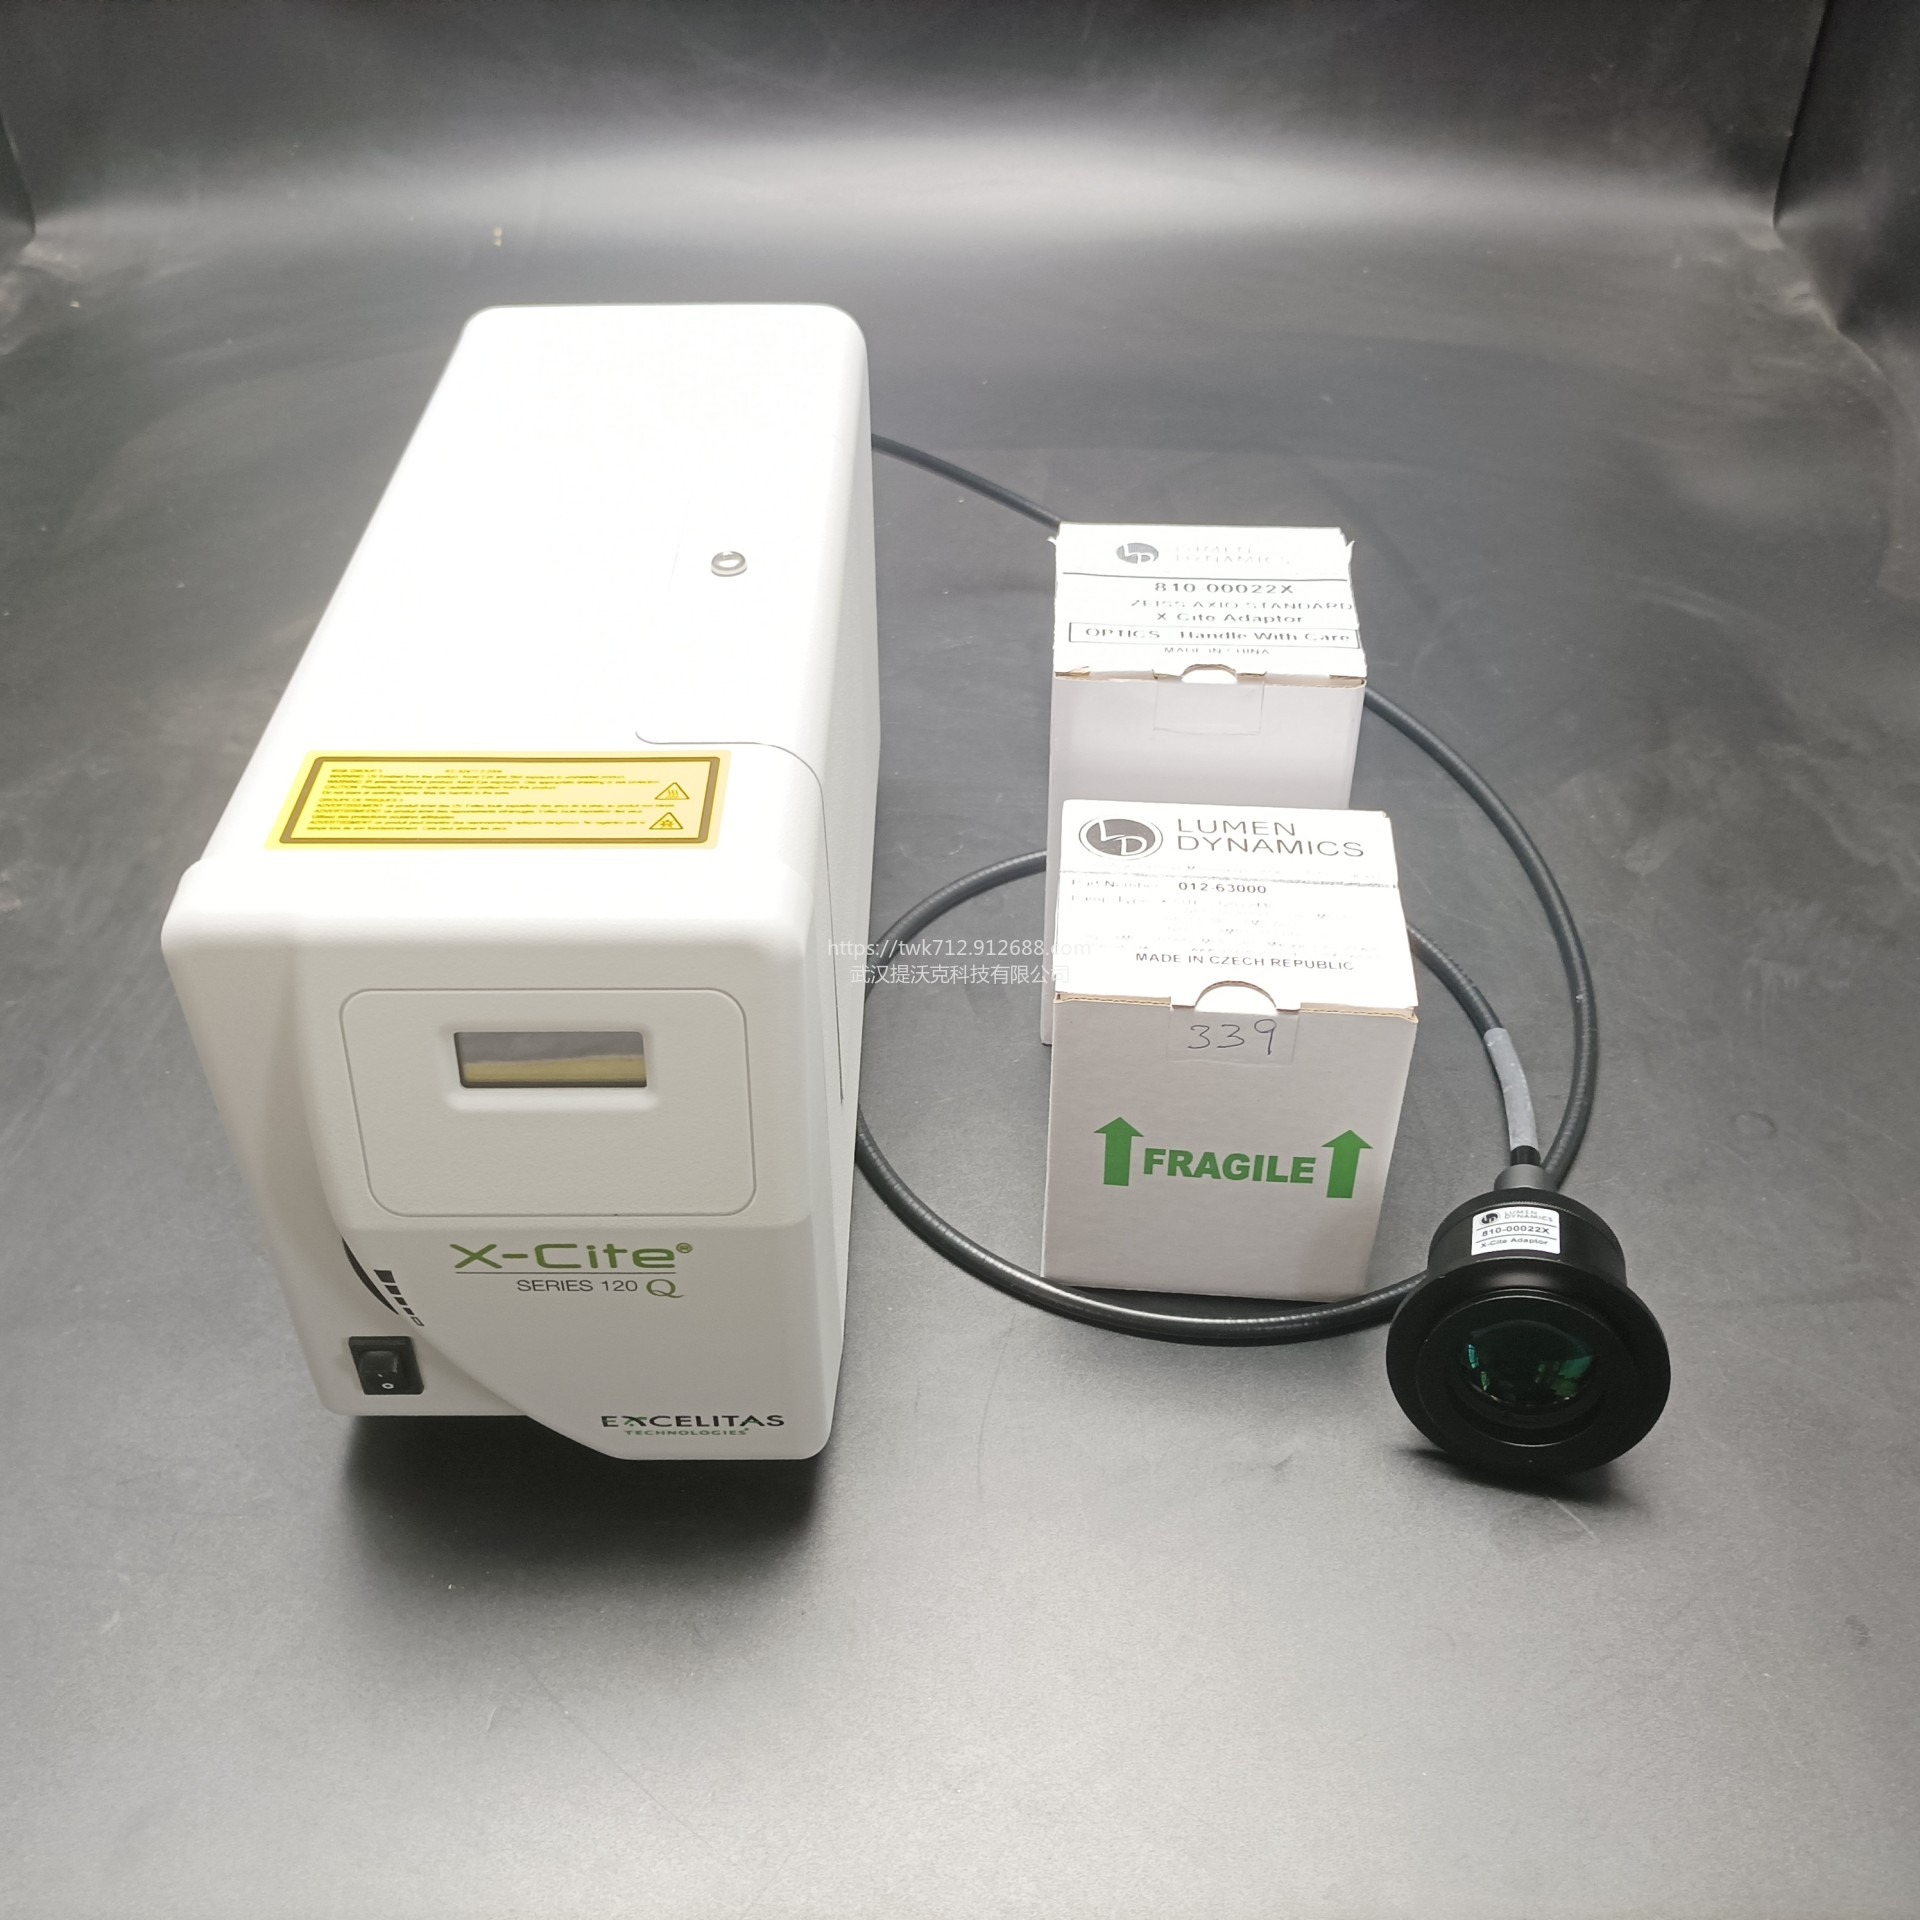 Excelitas荧光光源 X-Cite 120Q荧光显微镜激发系统